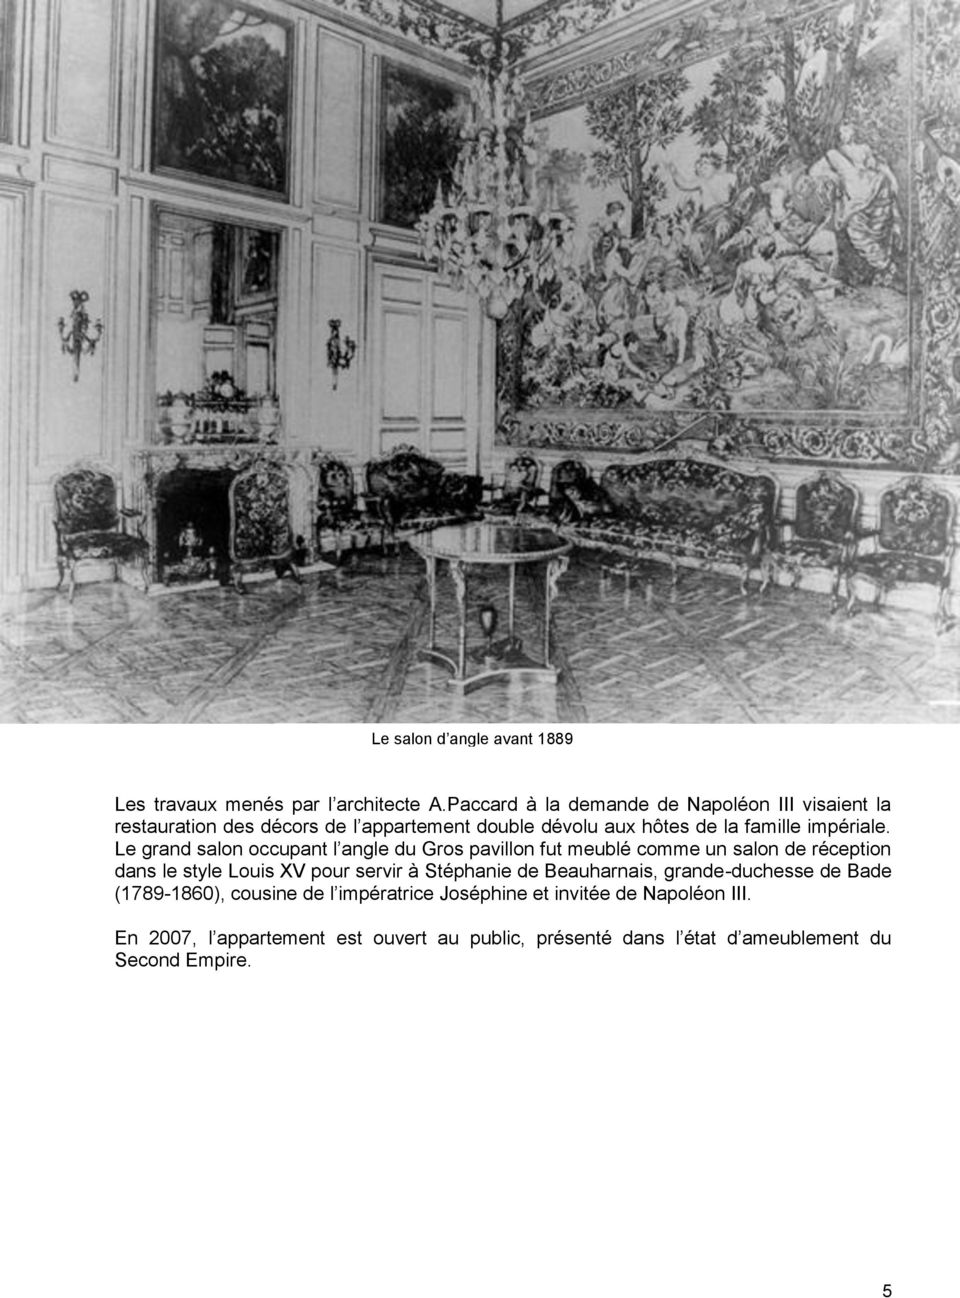 Le grand salon occupant l angle du Gros pavillon fut meublé comme un salon de réception dans le style Louis XV pour servir à Stéphanie de